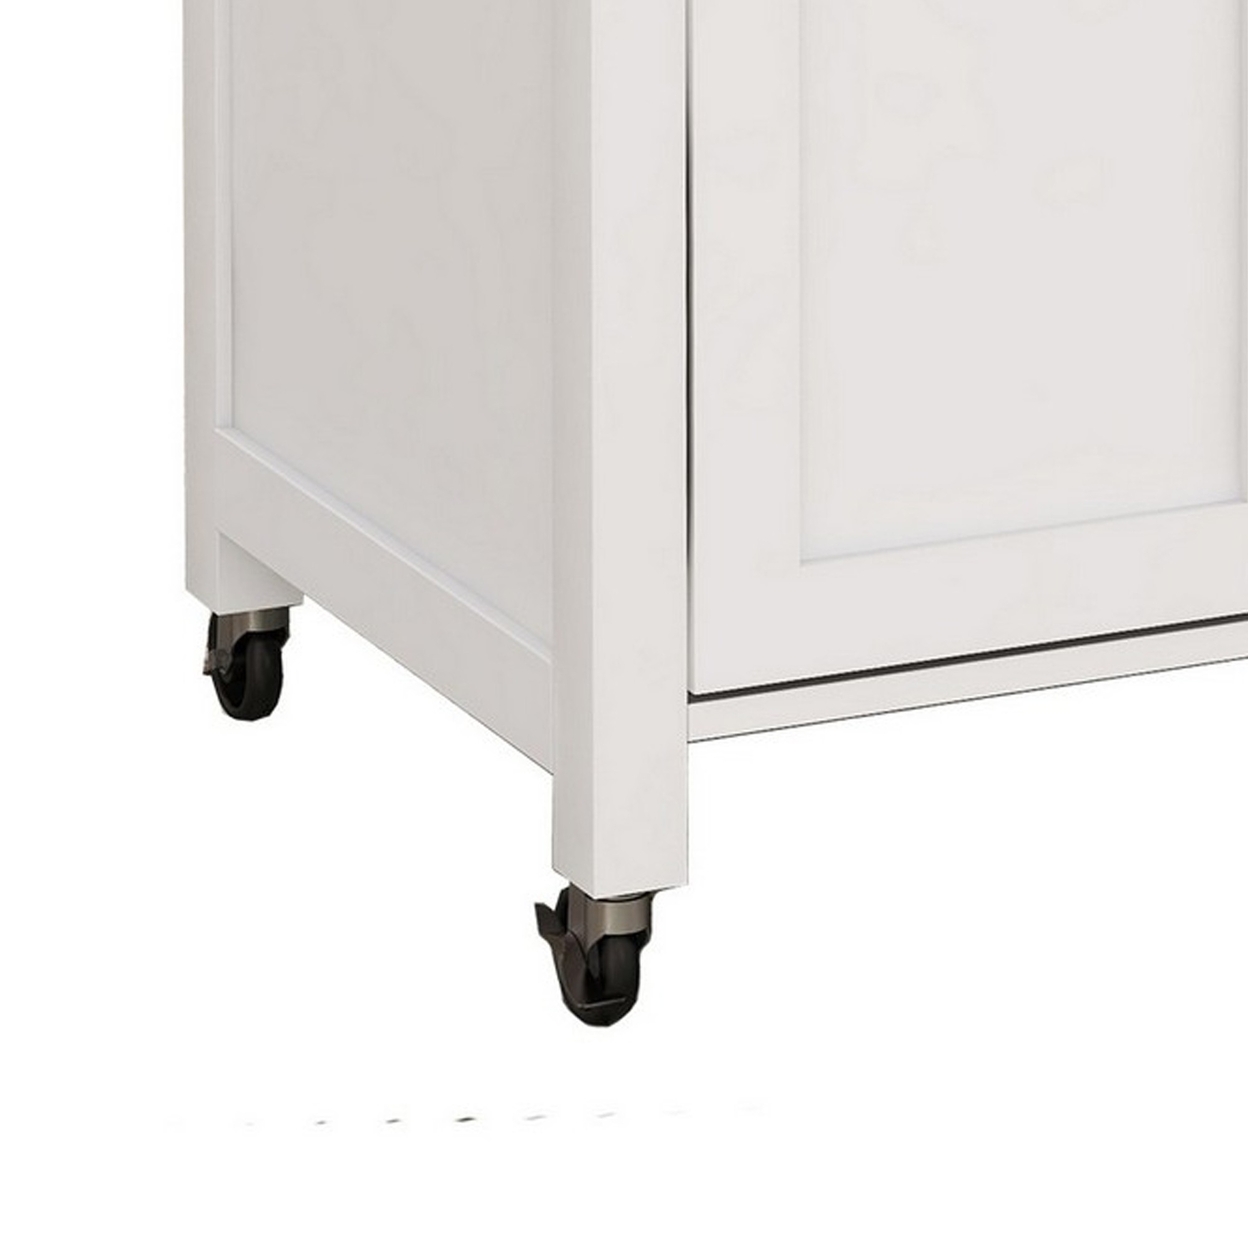 40 Inch Rolling Kicthen Cart, 3 Open Shelves, Double Door Cabinet, White- Saltoro Sherpi